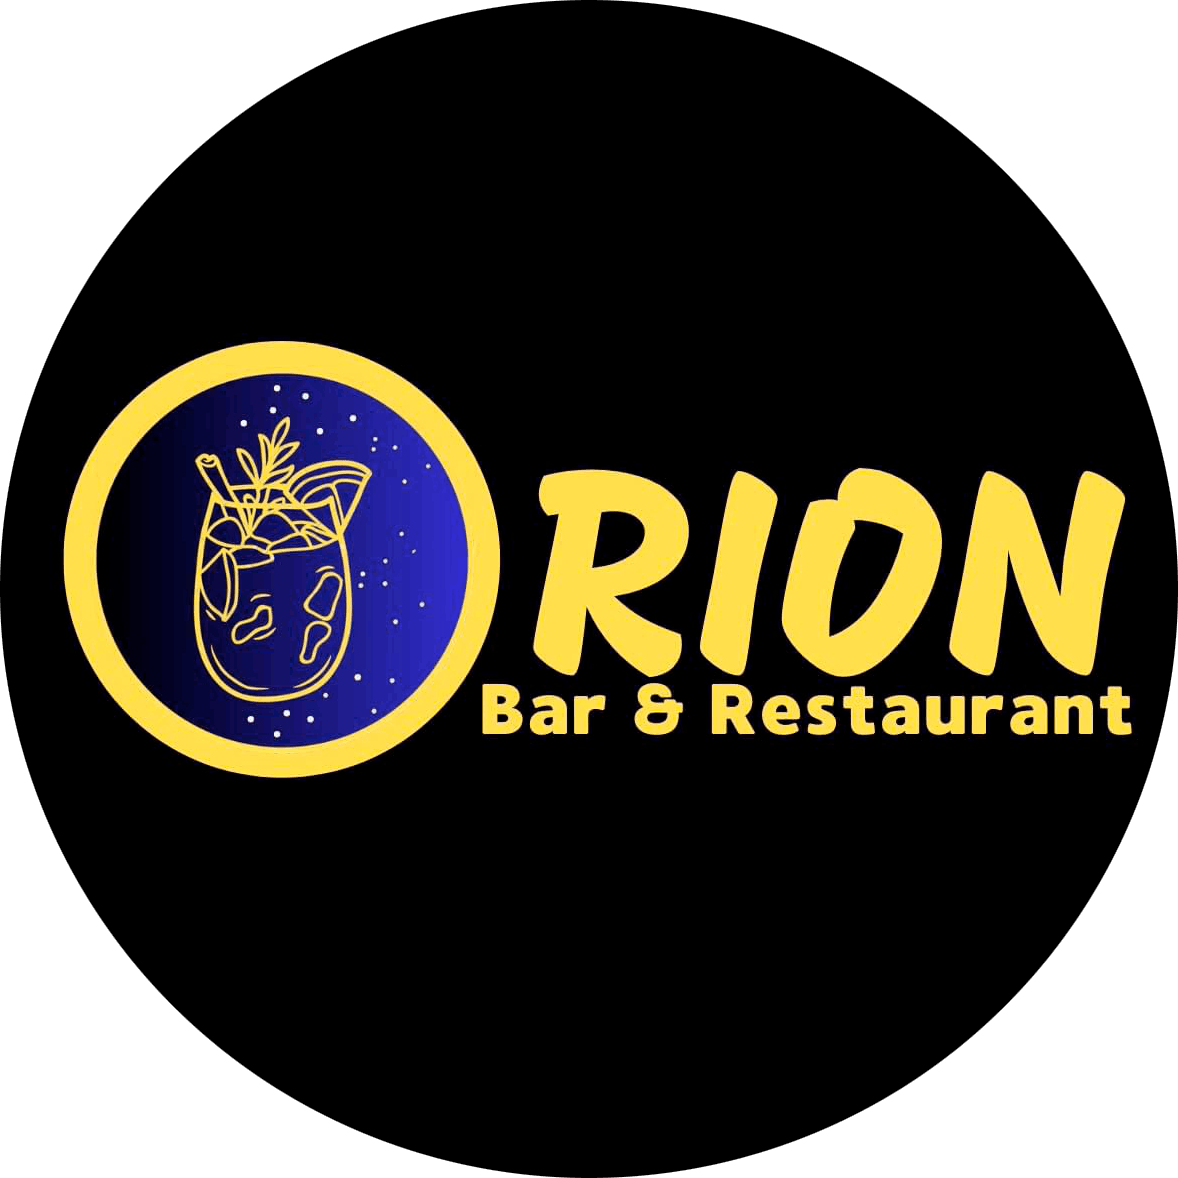 Orion Bar & Restaurant